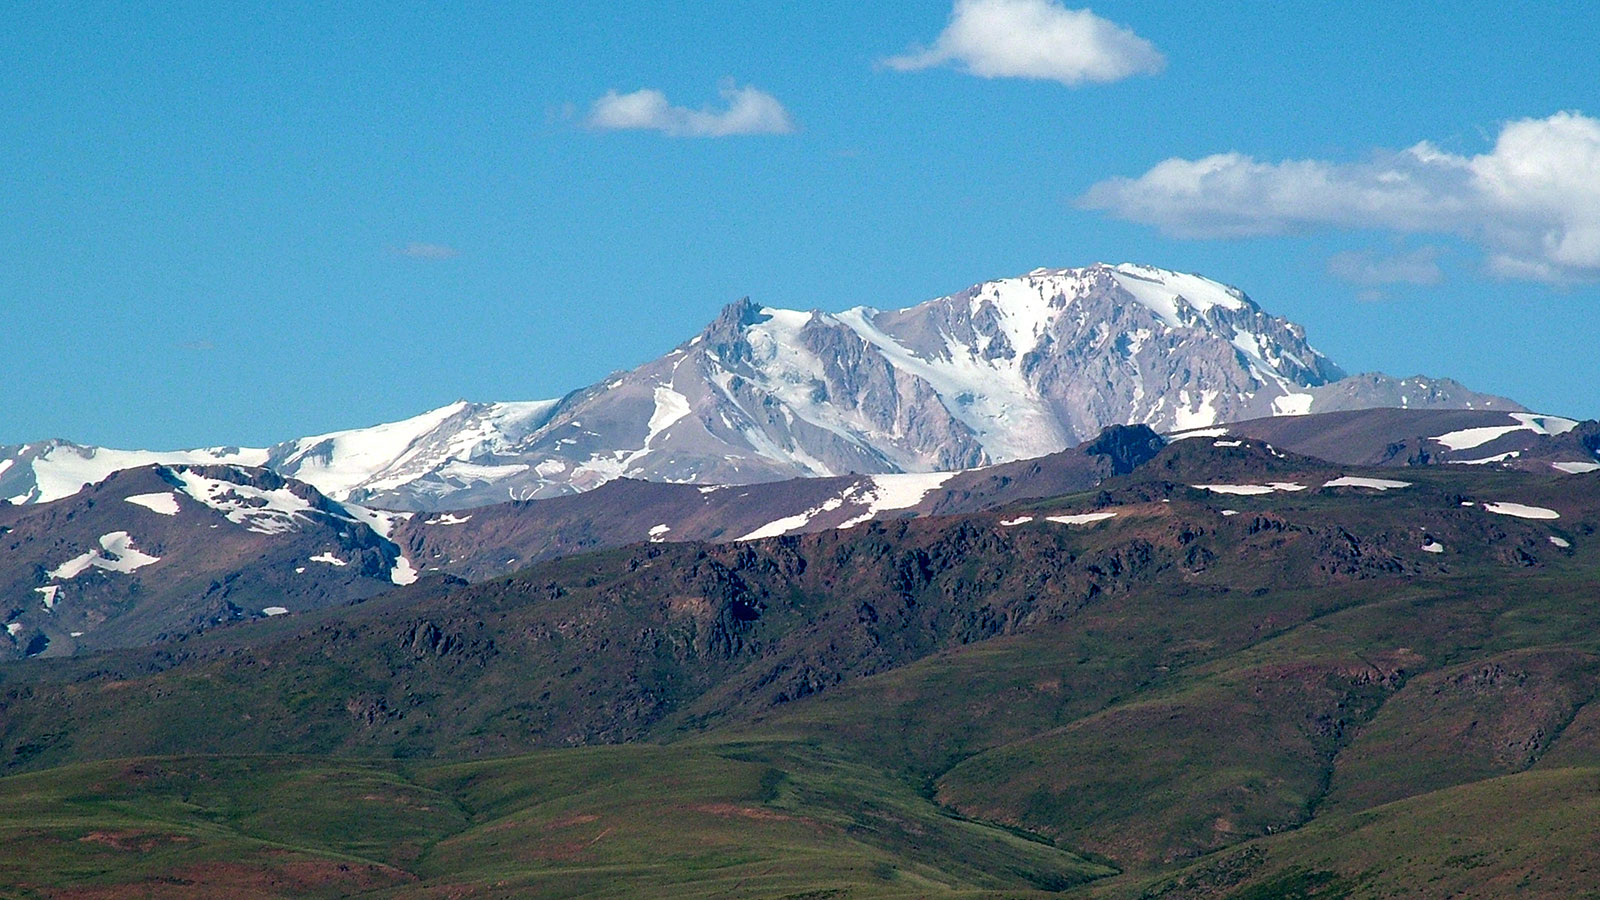  Mount Domuyo in Neuquen, Argentina